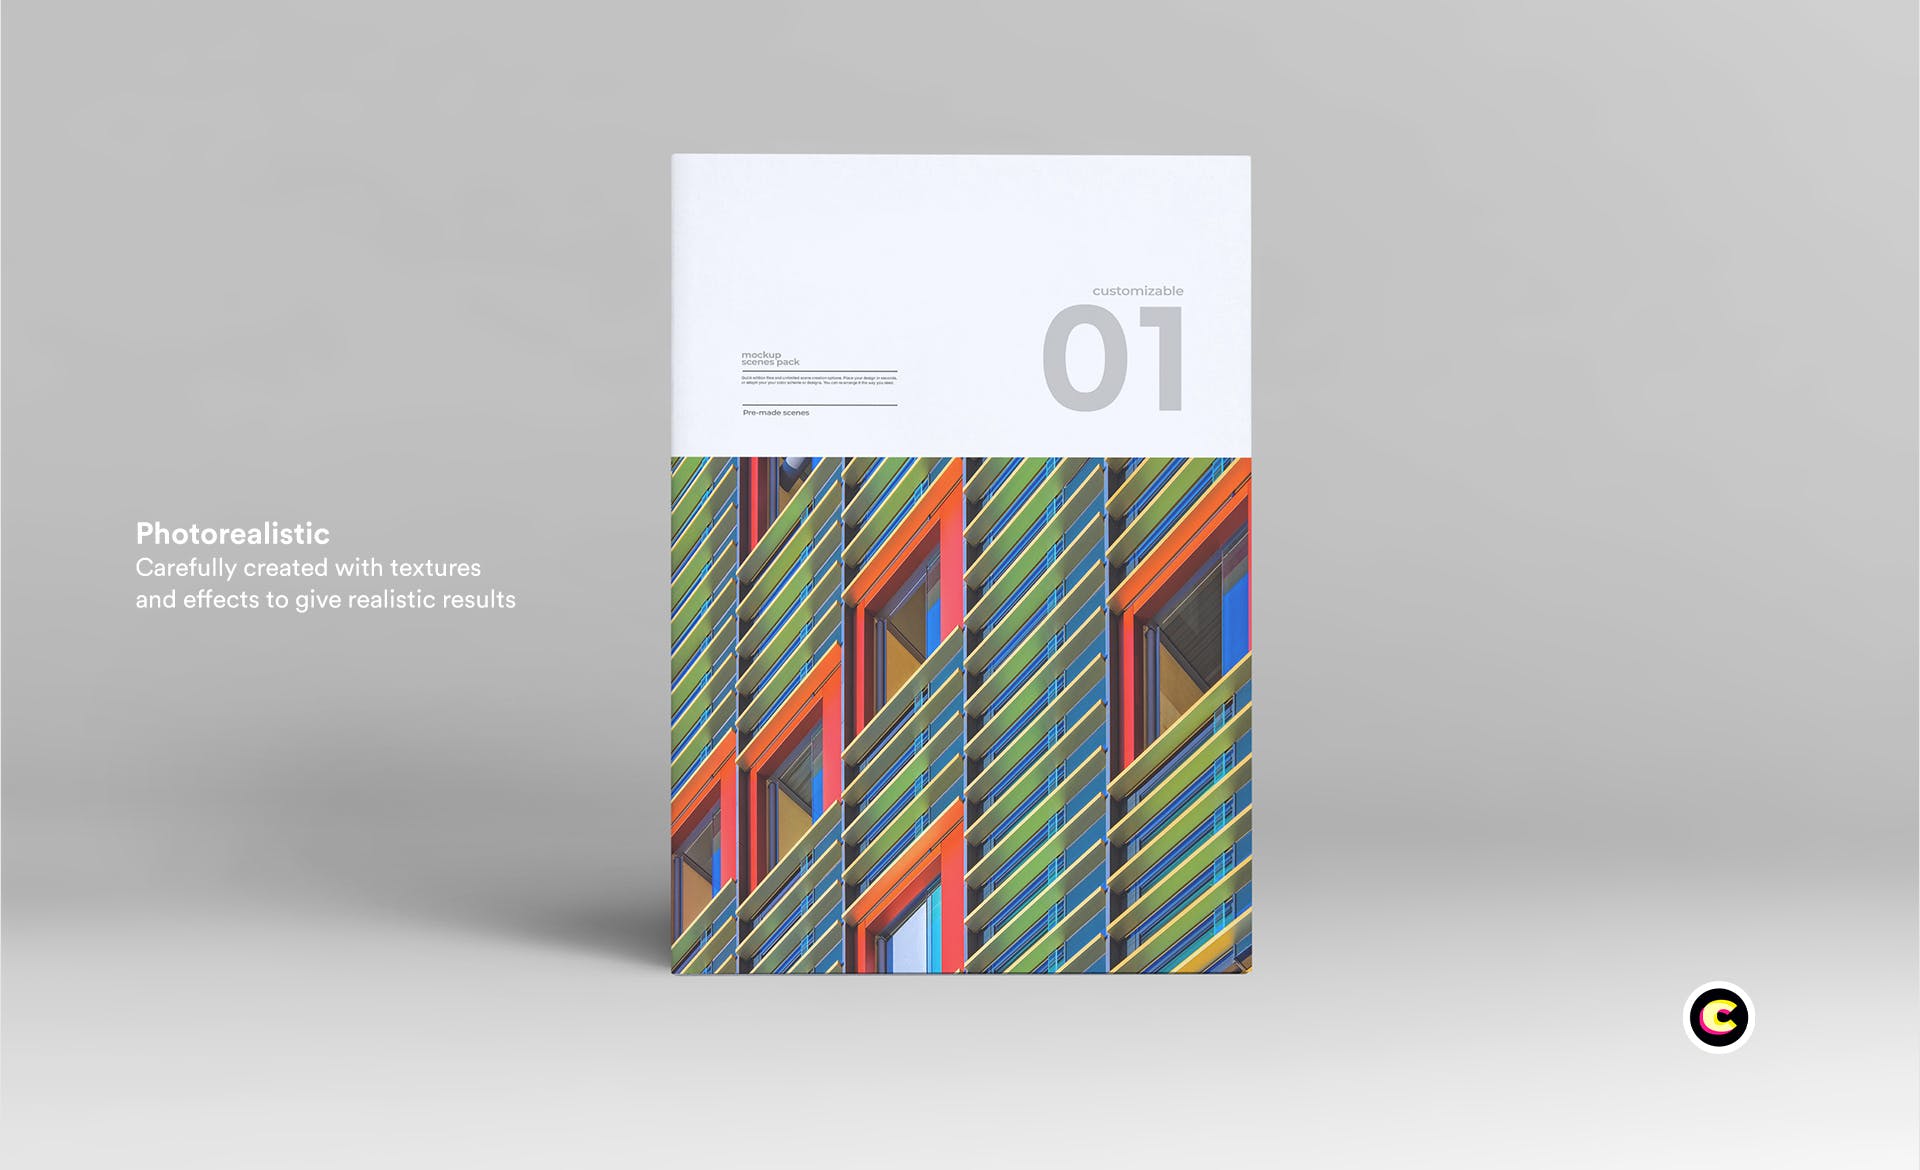 企业画册封面&版式设计效果图样机第一素材精选 Brochure Mock Up插图(3)